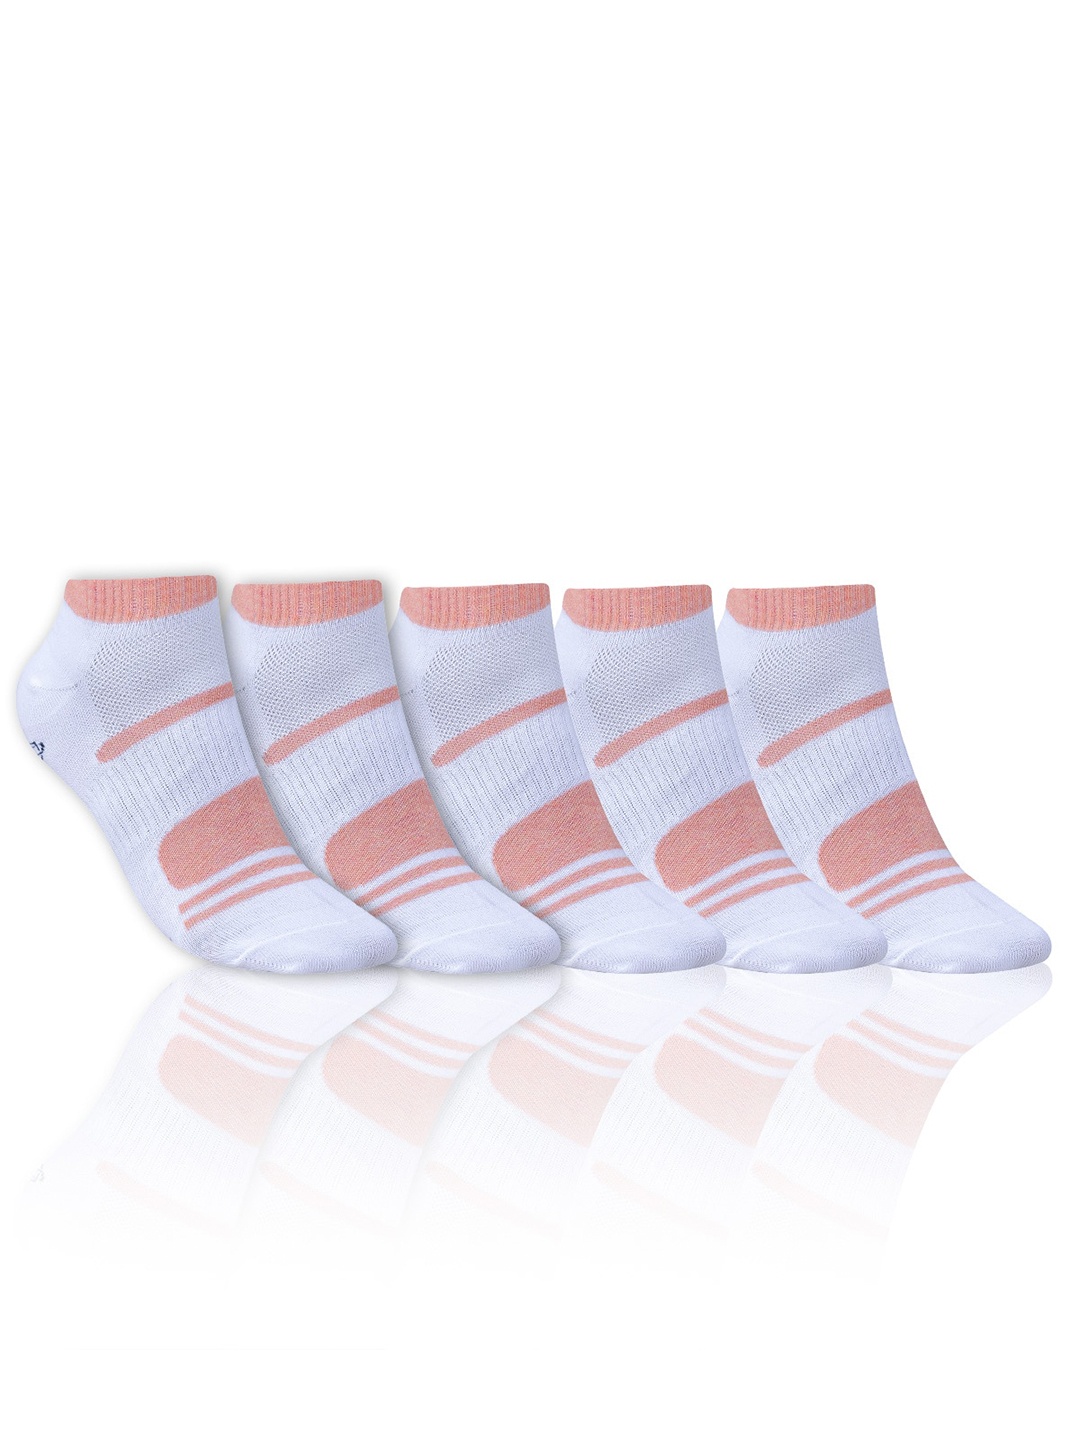 

Dollar Socks Men Pack Of 5 Patterned Cotton Calf-Length Socks, White